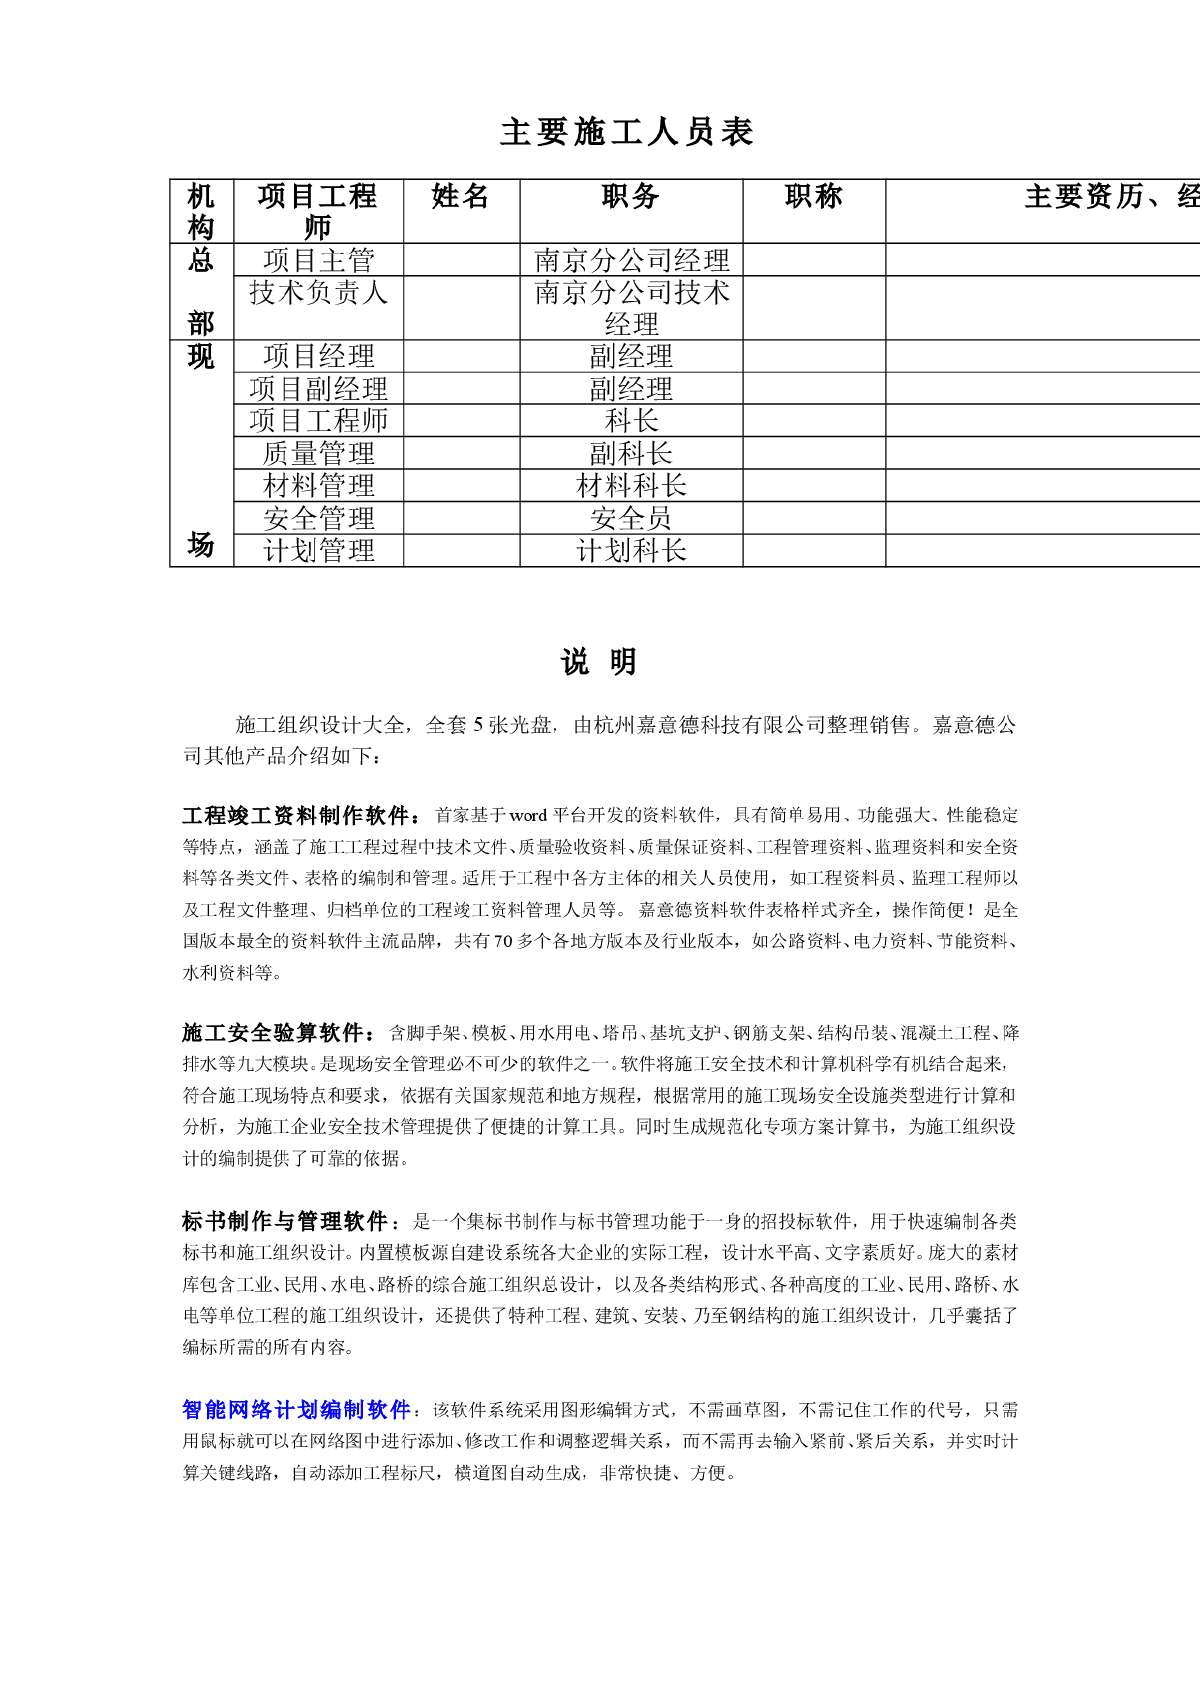 主要施工人员表(江苏地区)